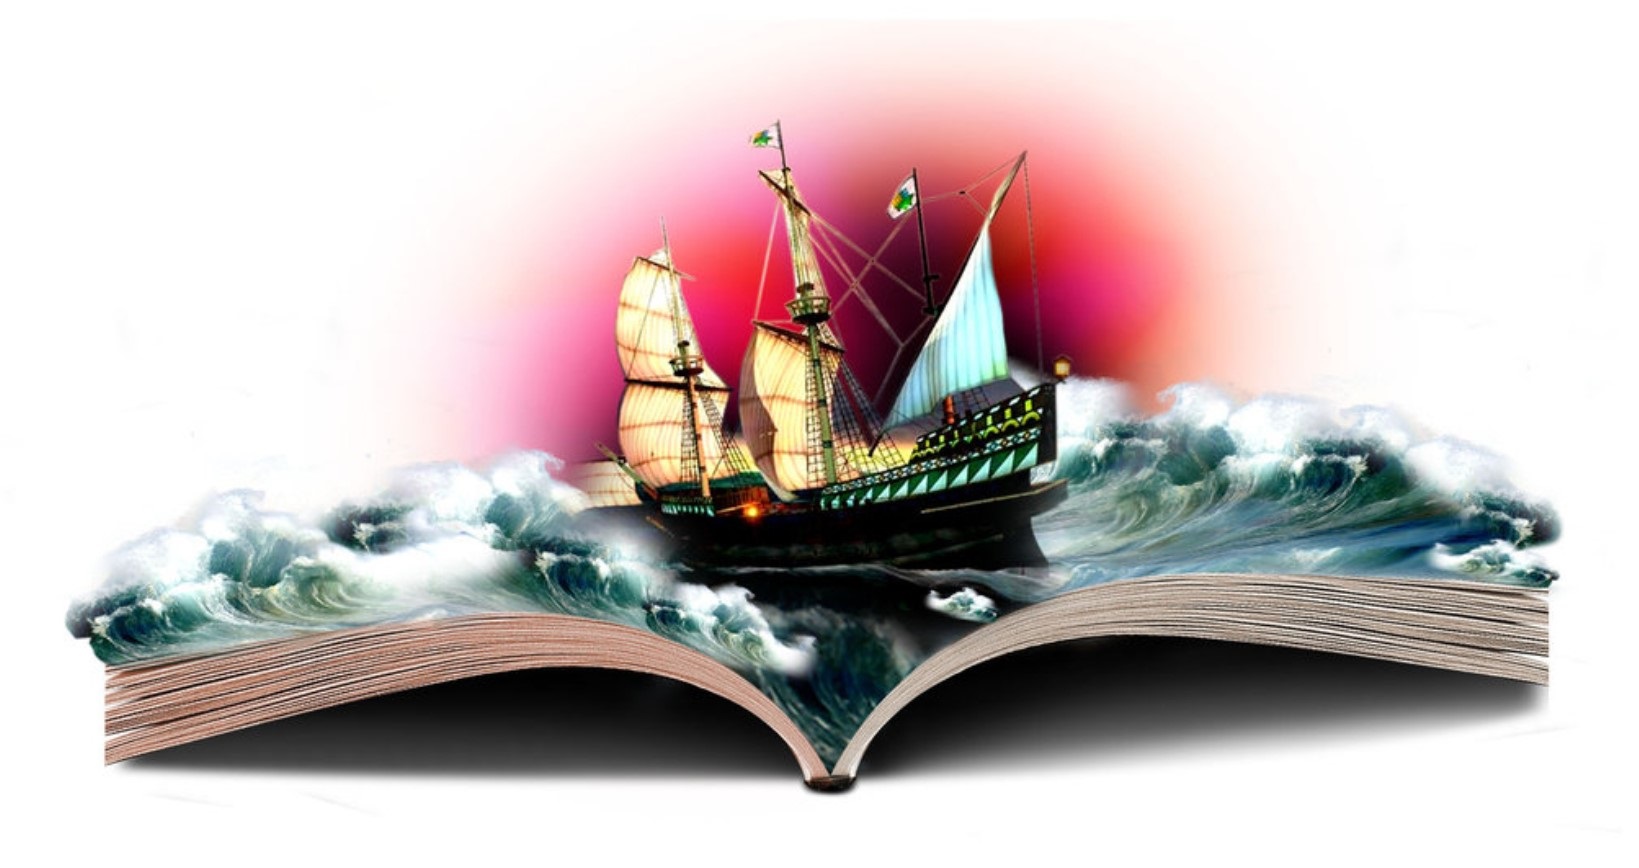 Крапивин алые паруса. Книга про корабли. Книги корабли мысли странствующие по волнам времени. Книги корабли мысли. Путешествие по книгам.